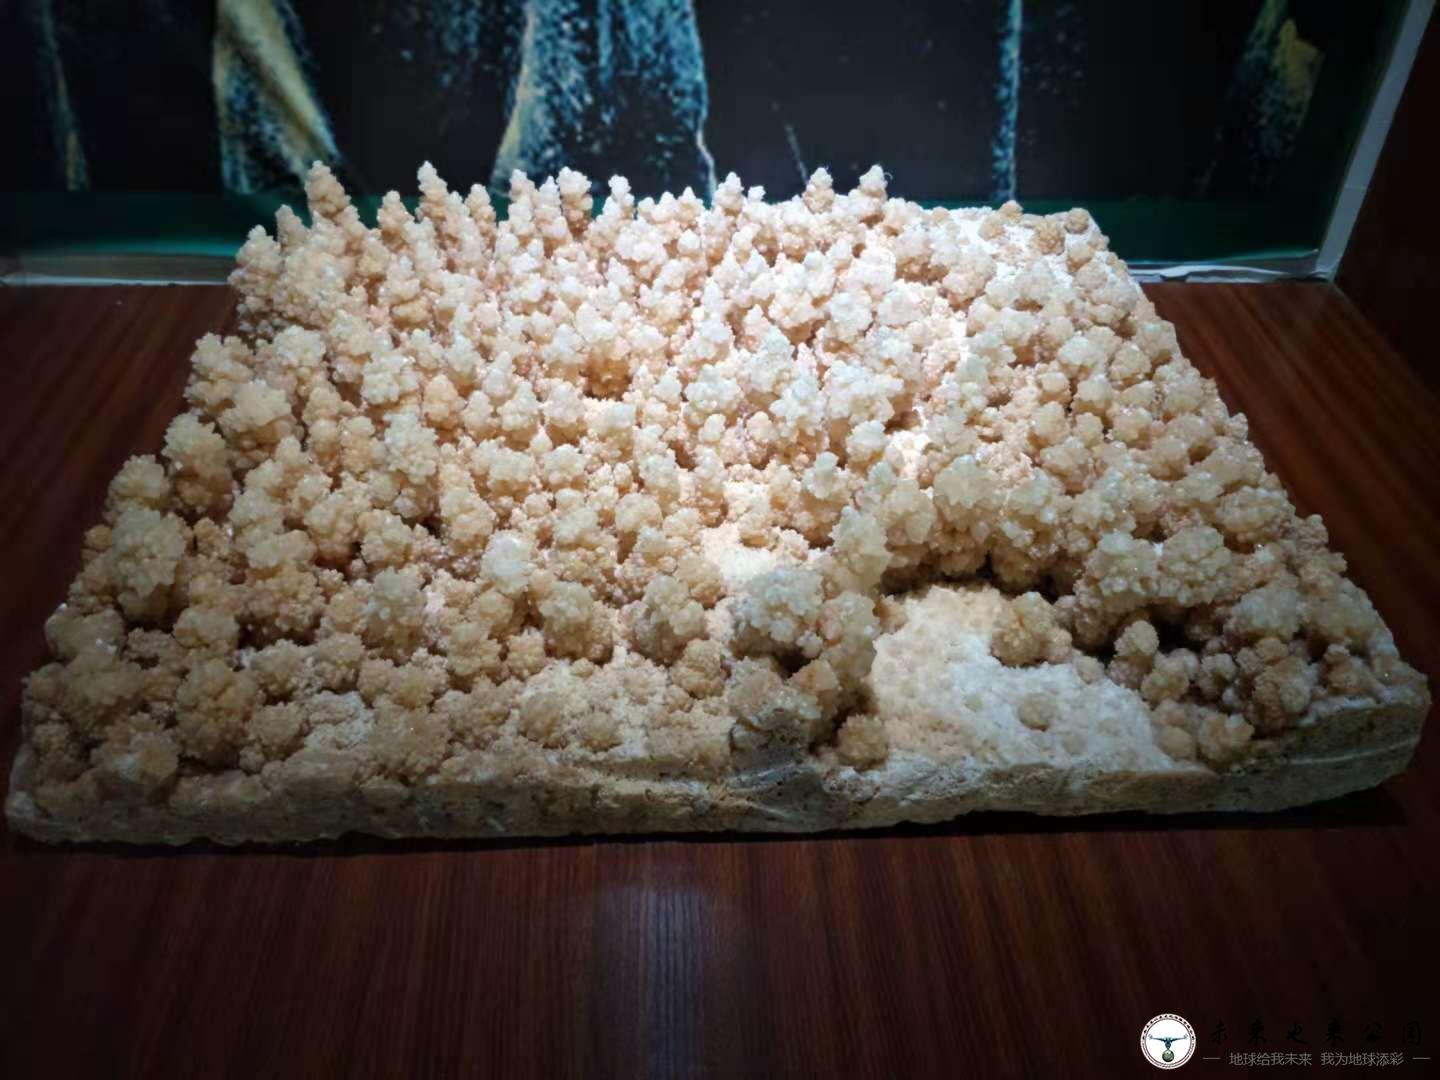 溶洞中的爆米花——石花|科普之窗|未来也来公园|石林喀斯特地质科研博物馆